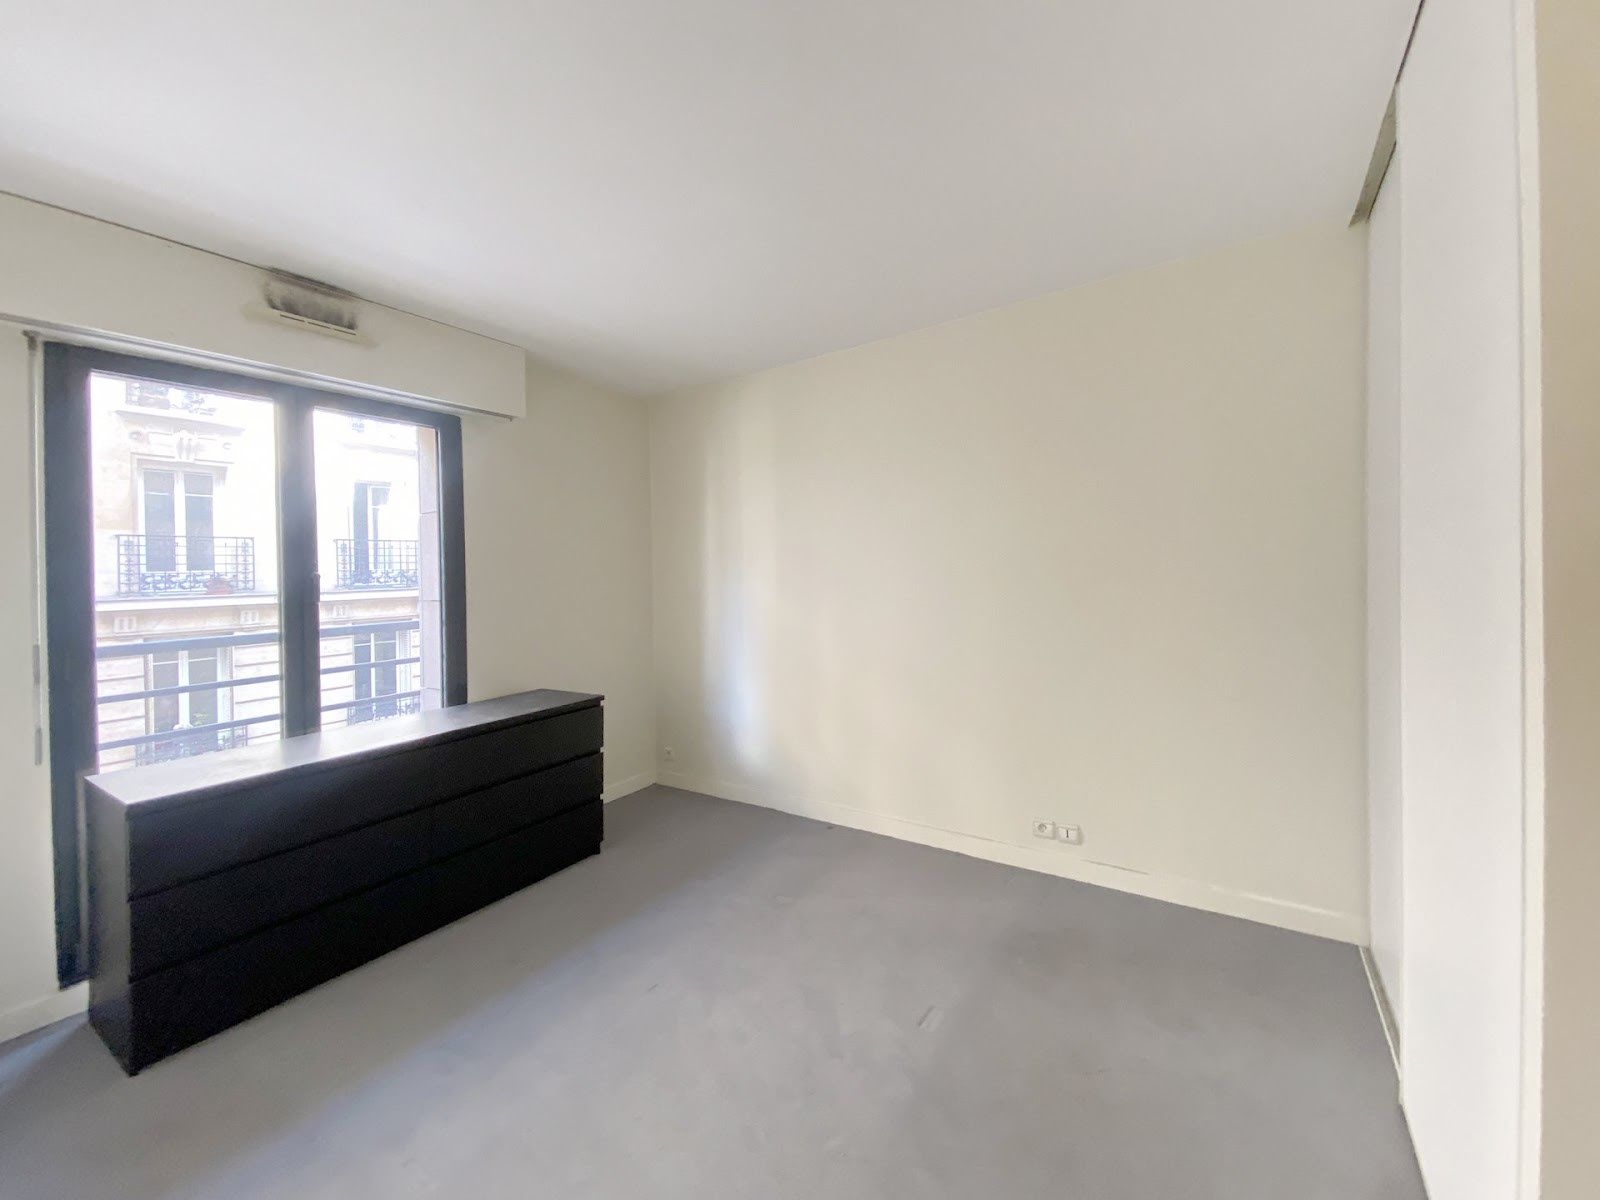 Location appartement 2 pièces 50,42 m2